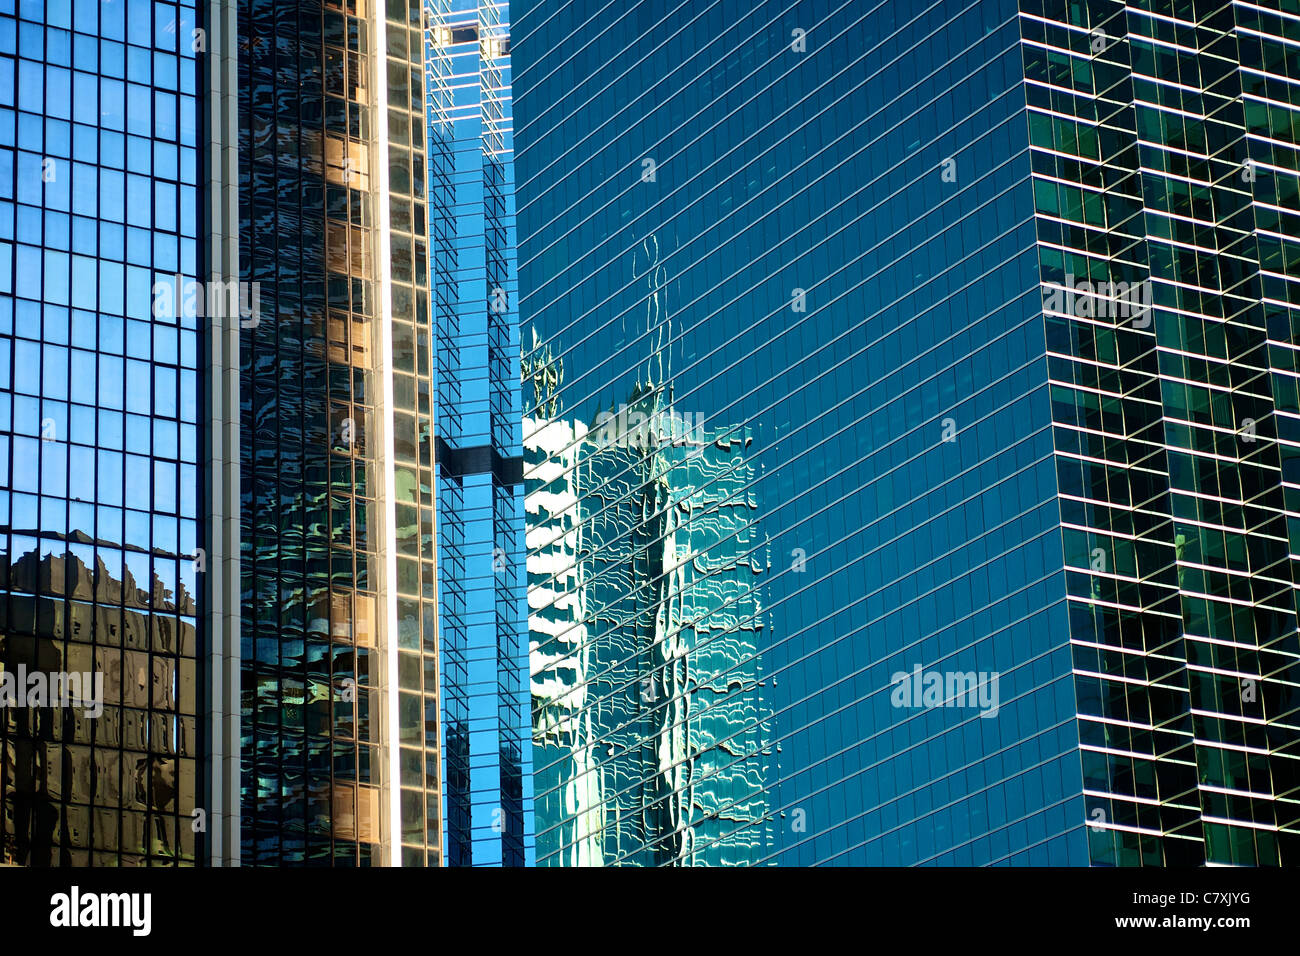 Dettagli architettonici e vetro riflettente degli edifici al posto pacifico in Admiralty. Foto Stock